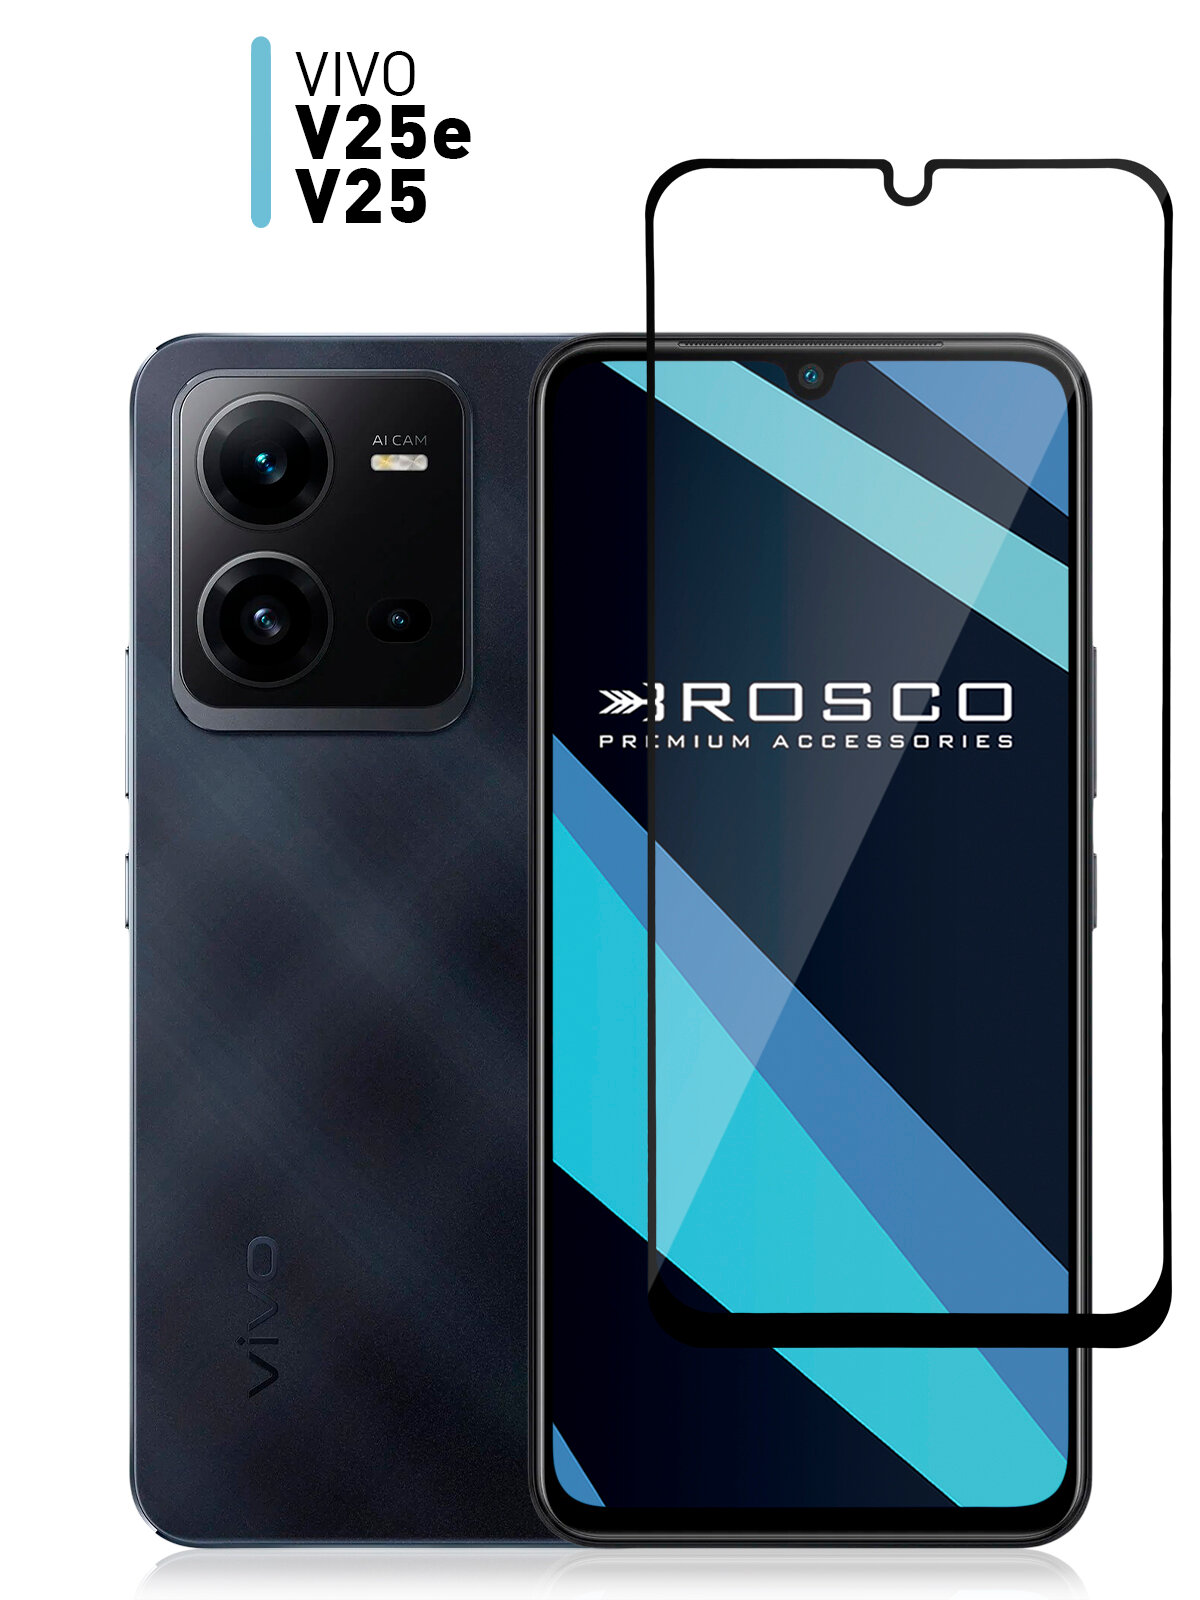 Защитное стекло для Vivo V25e и Vivo V25 (Виво В25Е и В25) с премиальным олеофобным покрытием, легко наклеить, прозрачное стекло ROSCO с черной рамкой